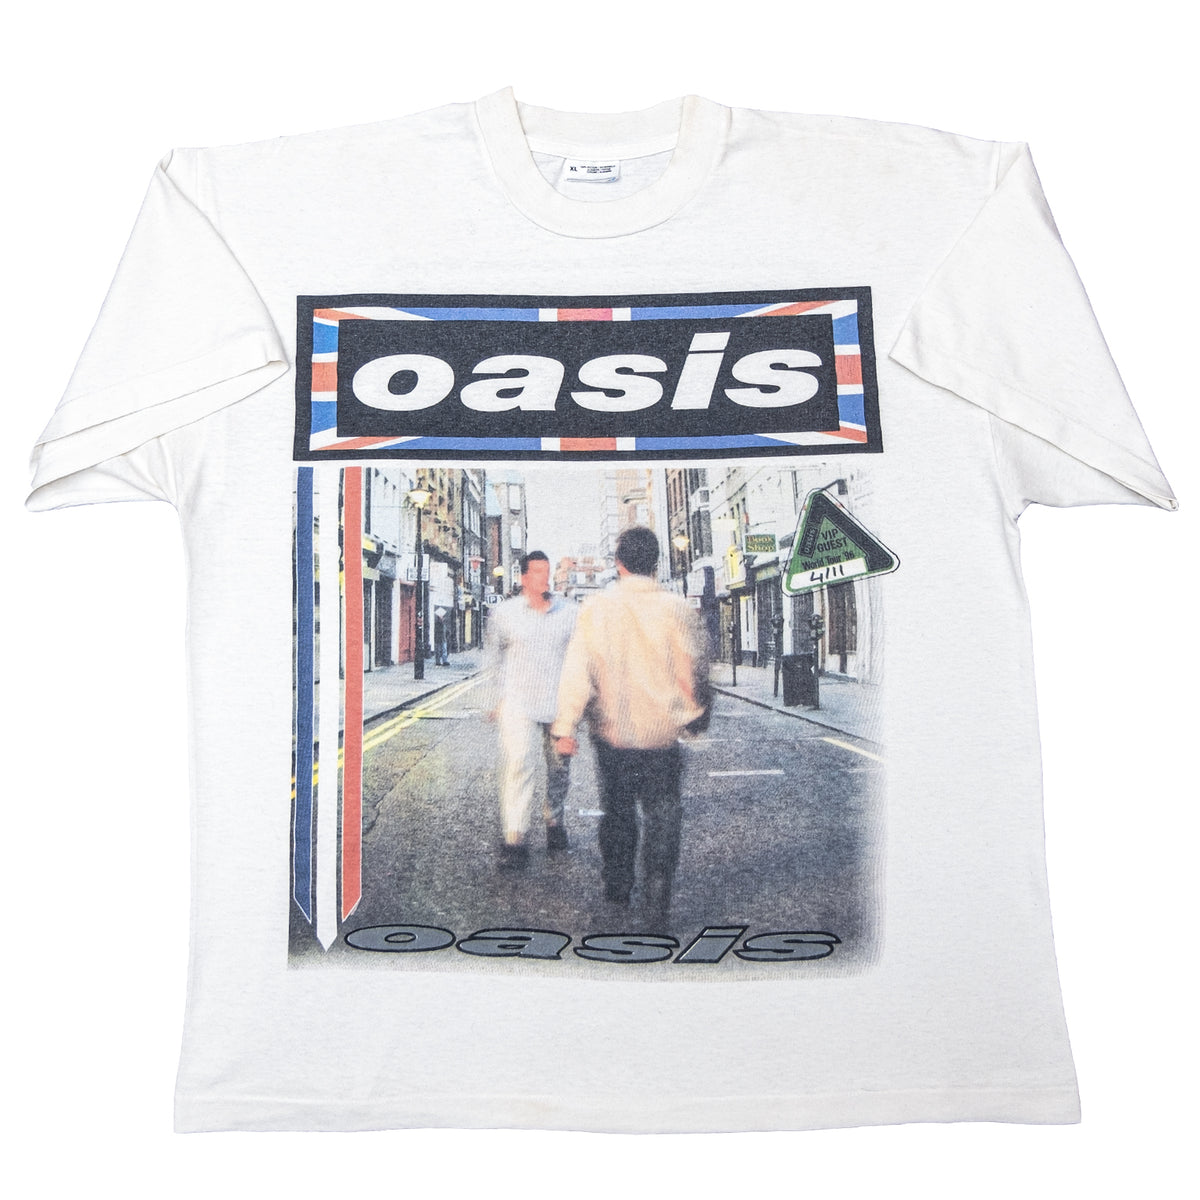 Oasis, ‘Knebworth’, 1996